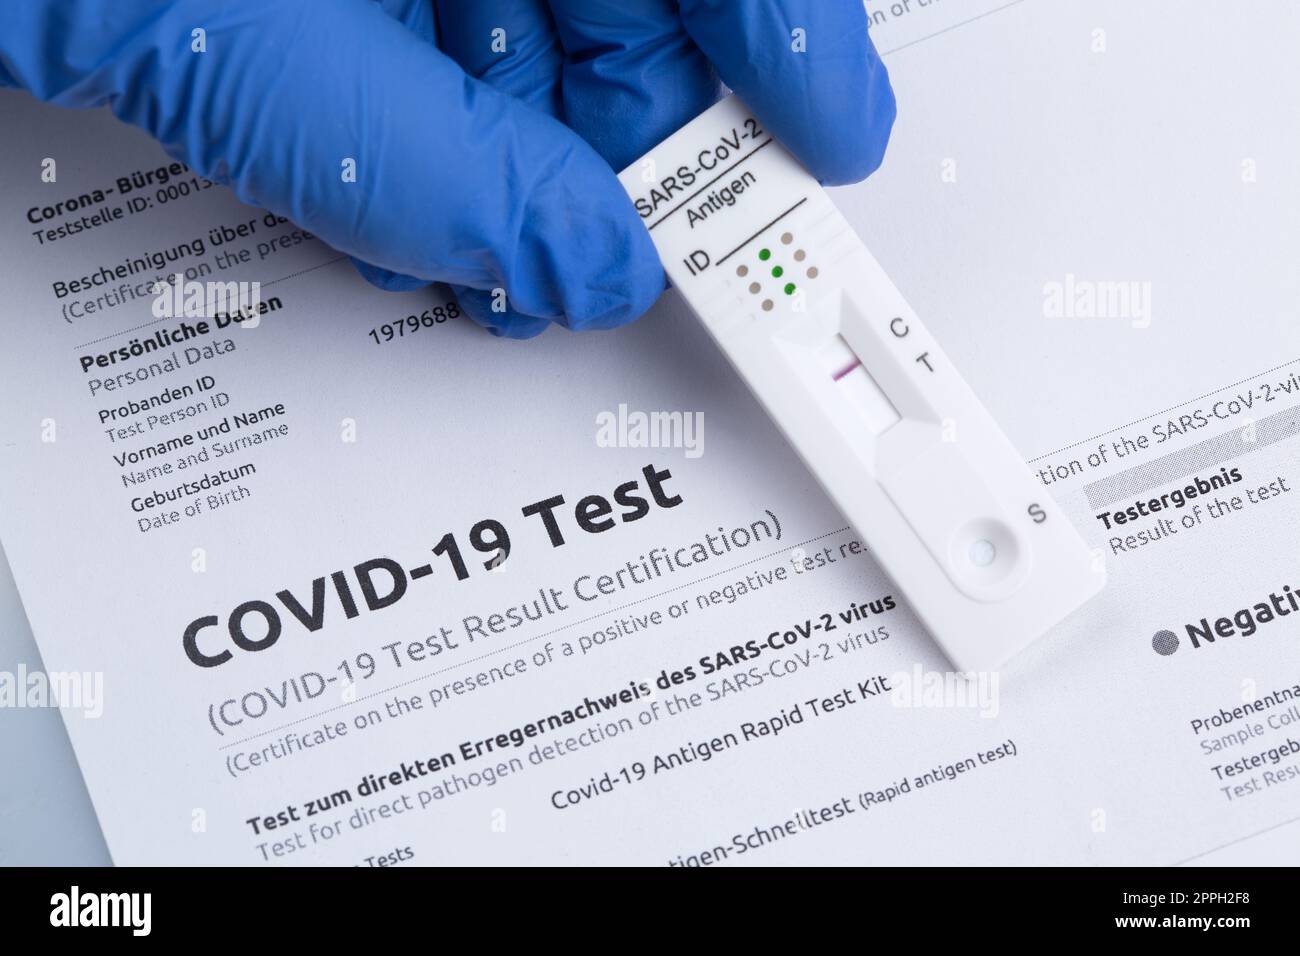 Risultato negativo del test utilizzando un dispositivo di test rapido per COVID-19. Foto Stock